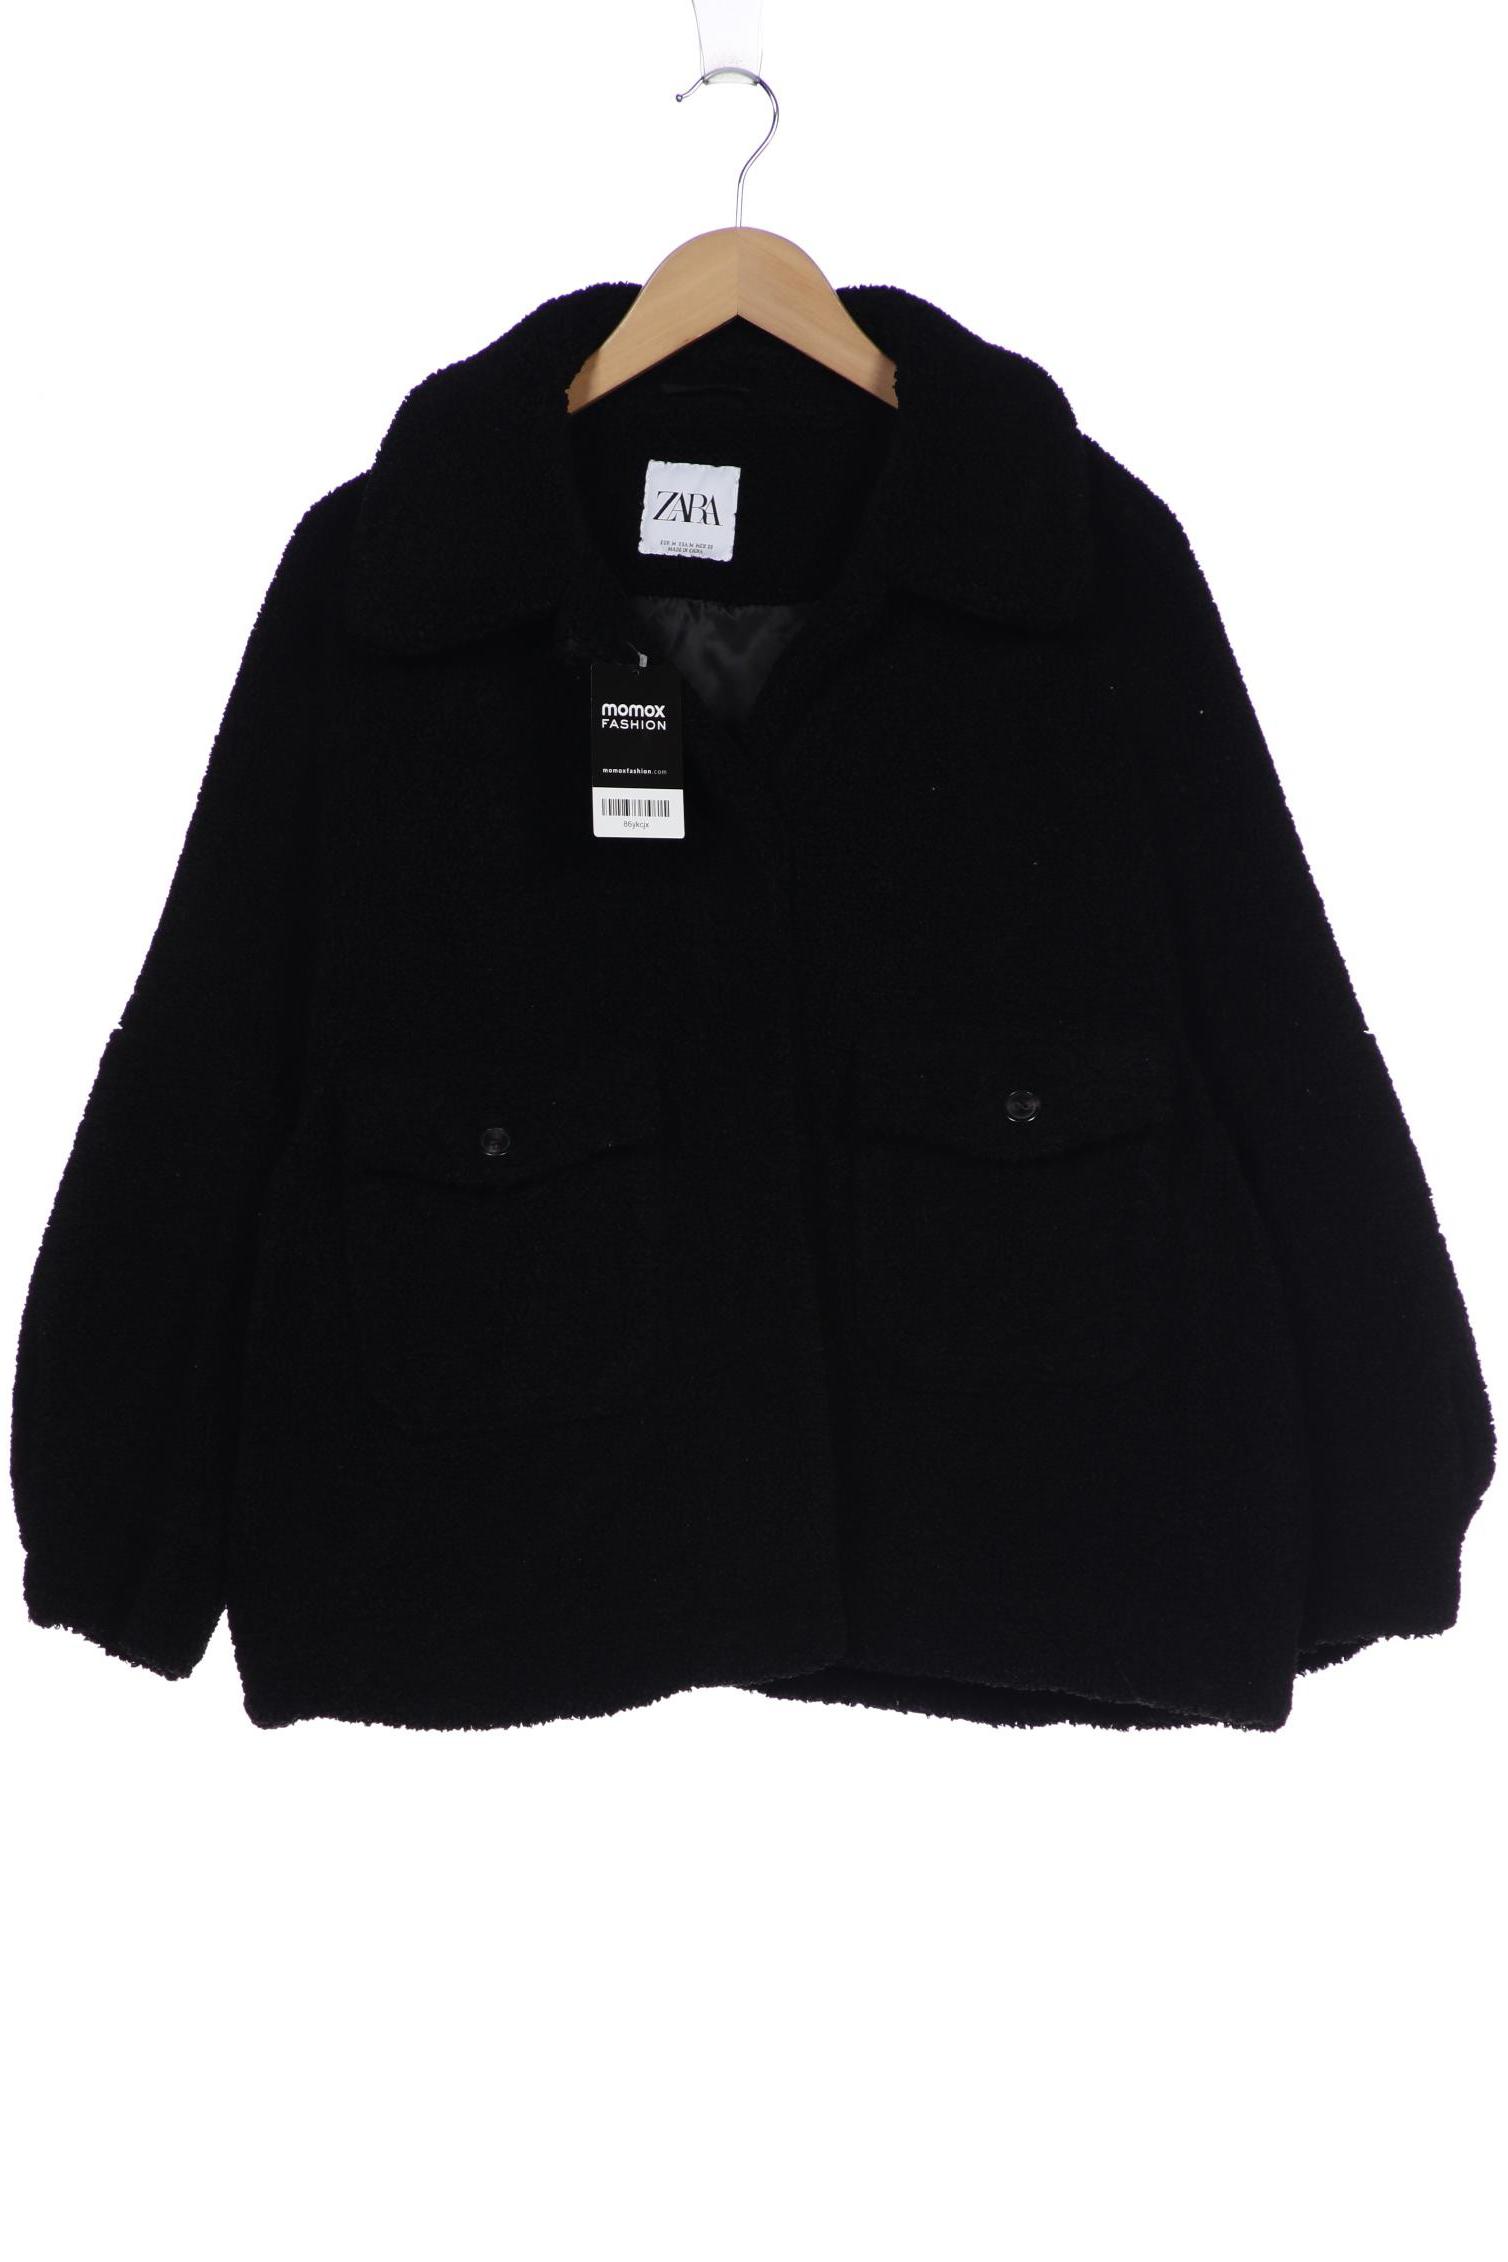 Zara Damen Jacke, schwarz, Gr. 38 von ZARA